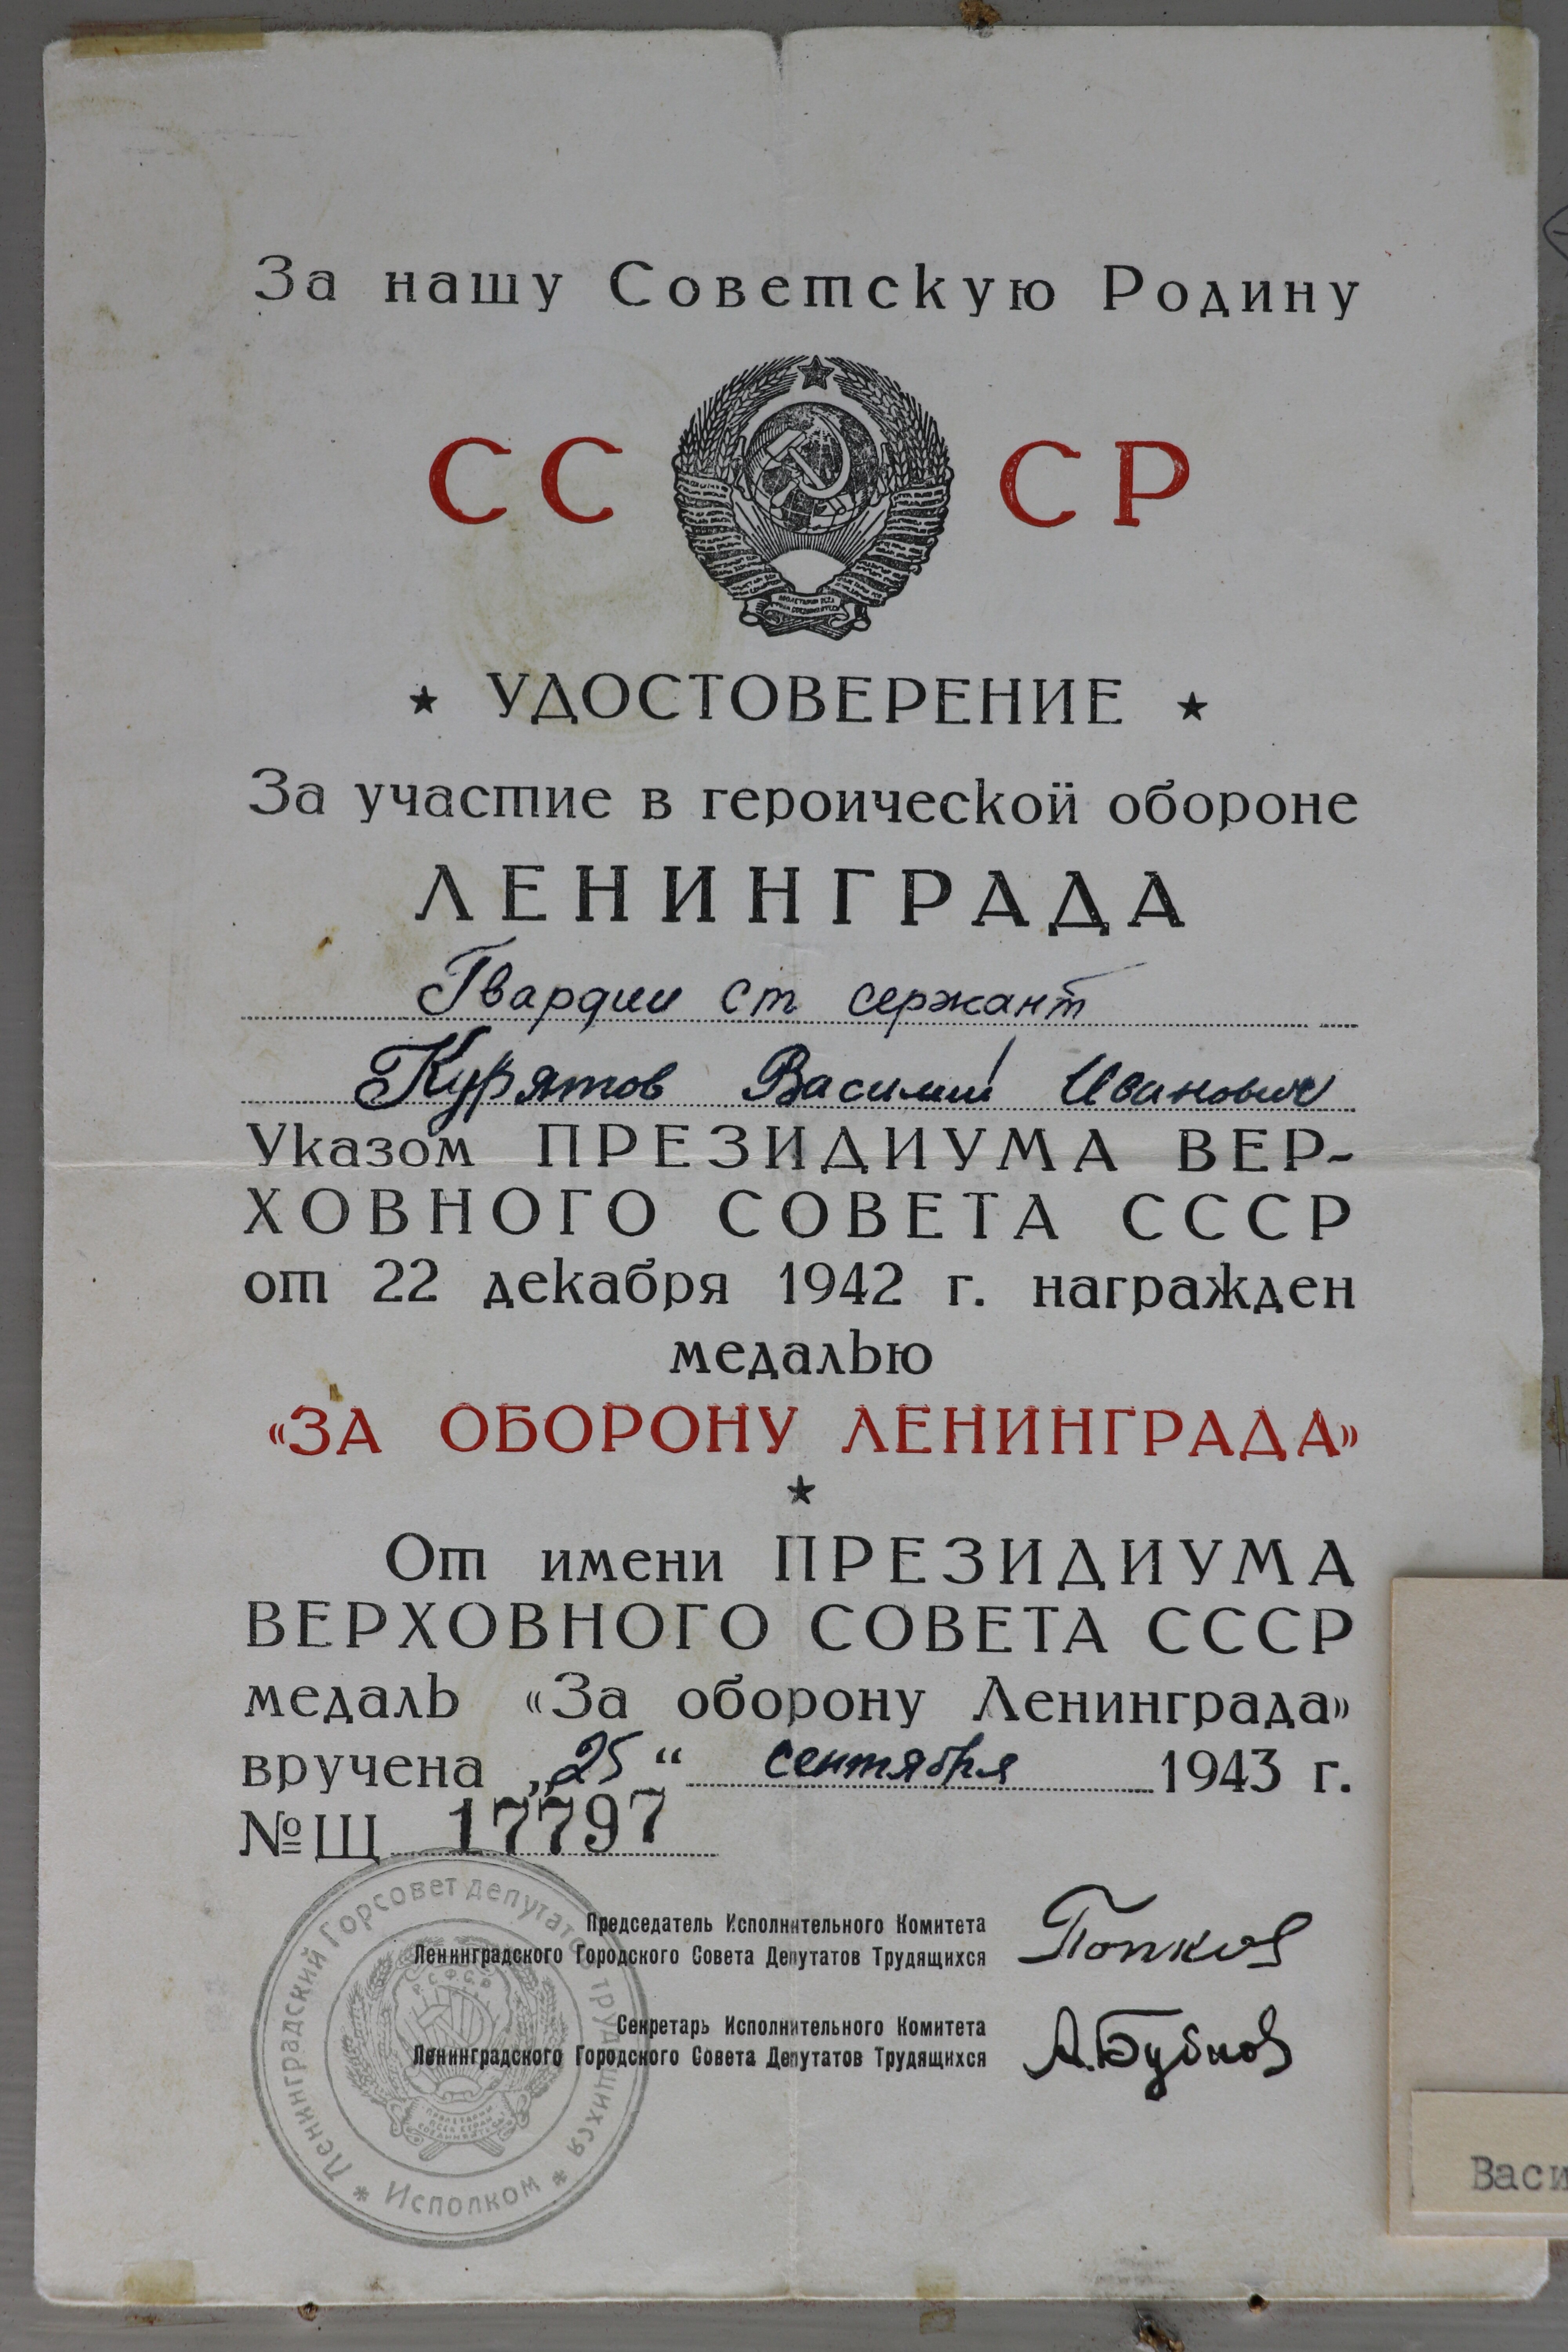 Urkunde über Verleihung der Medaille: "Für die Verteidigung Leningrads" (Museum Berlin-Karlshorst CC BY-NC-SA)